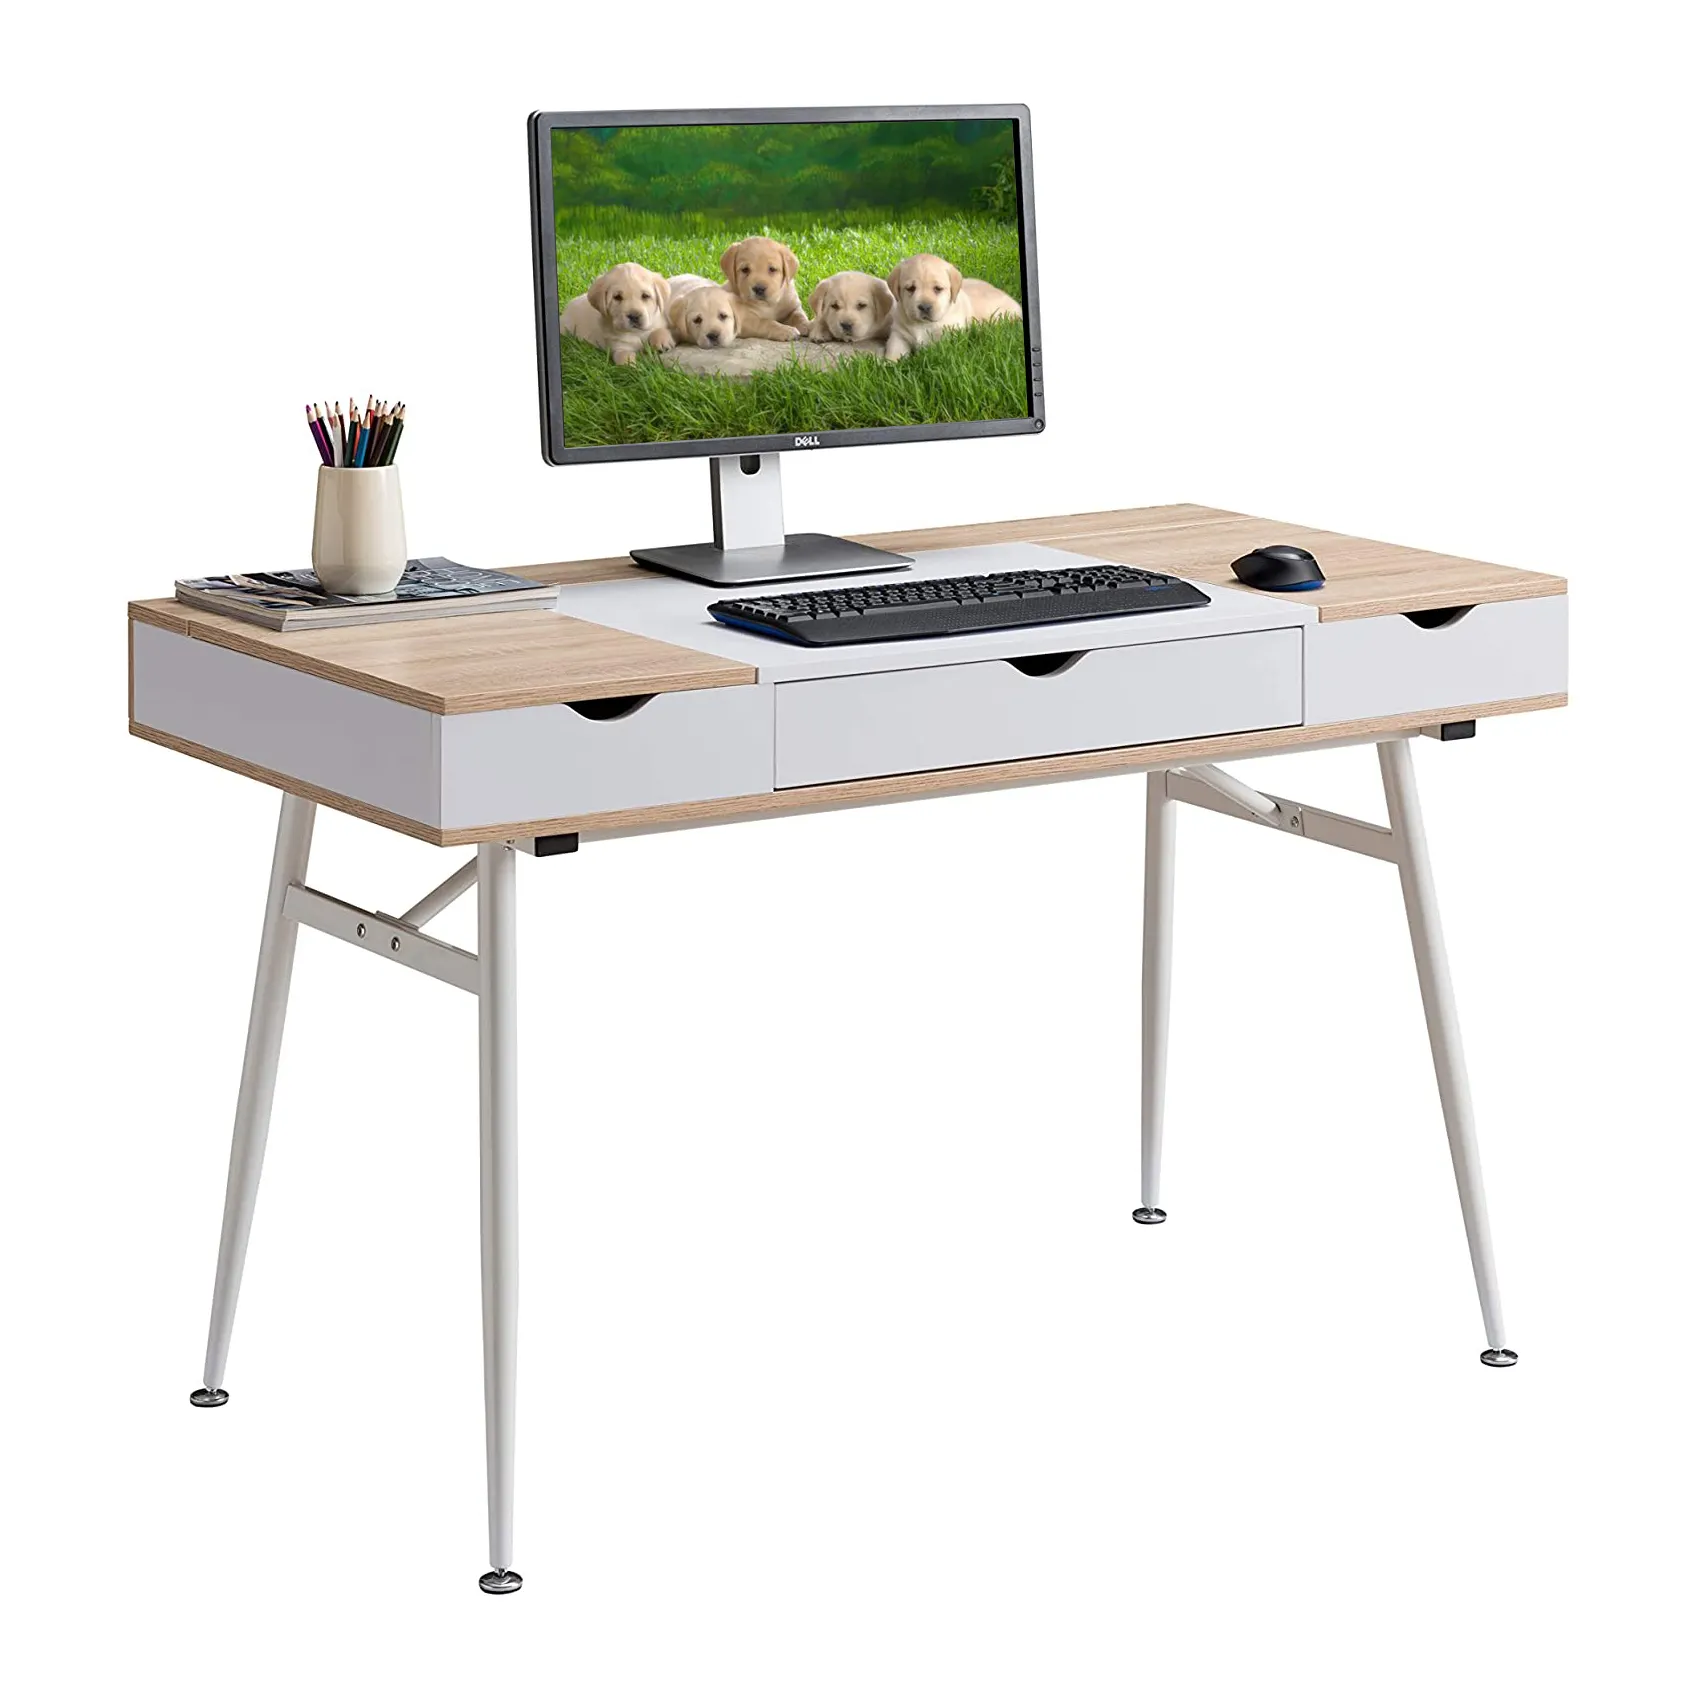 الجملة مكتب للحاسوب شخصي الكمبيوتر ، الكمبيوتر المكتبية الحديثة مكتب طاولة للدراسة ، خشبية للكمبيوتر قابلة للطي مكتب للسرير